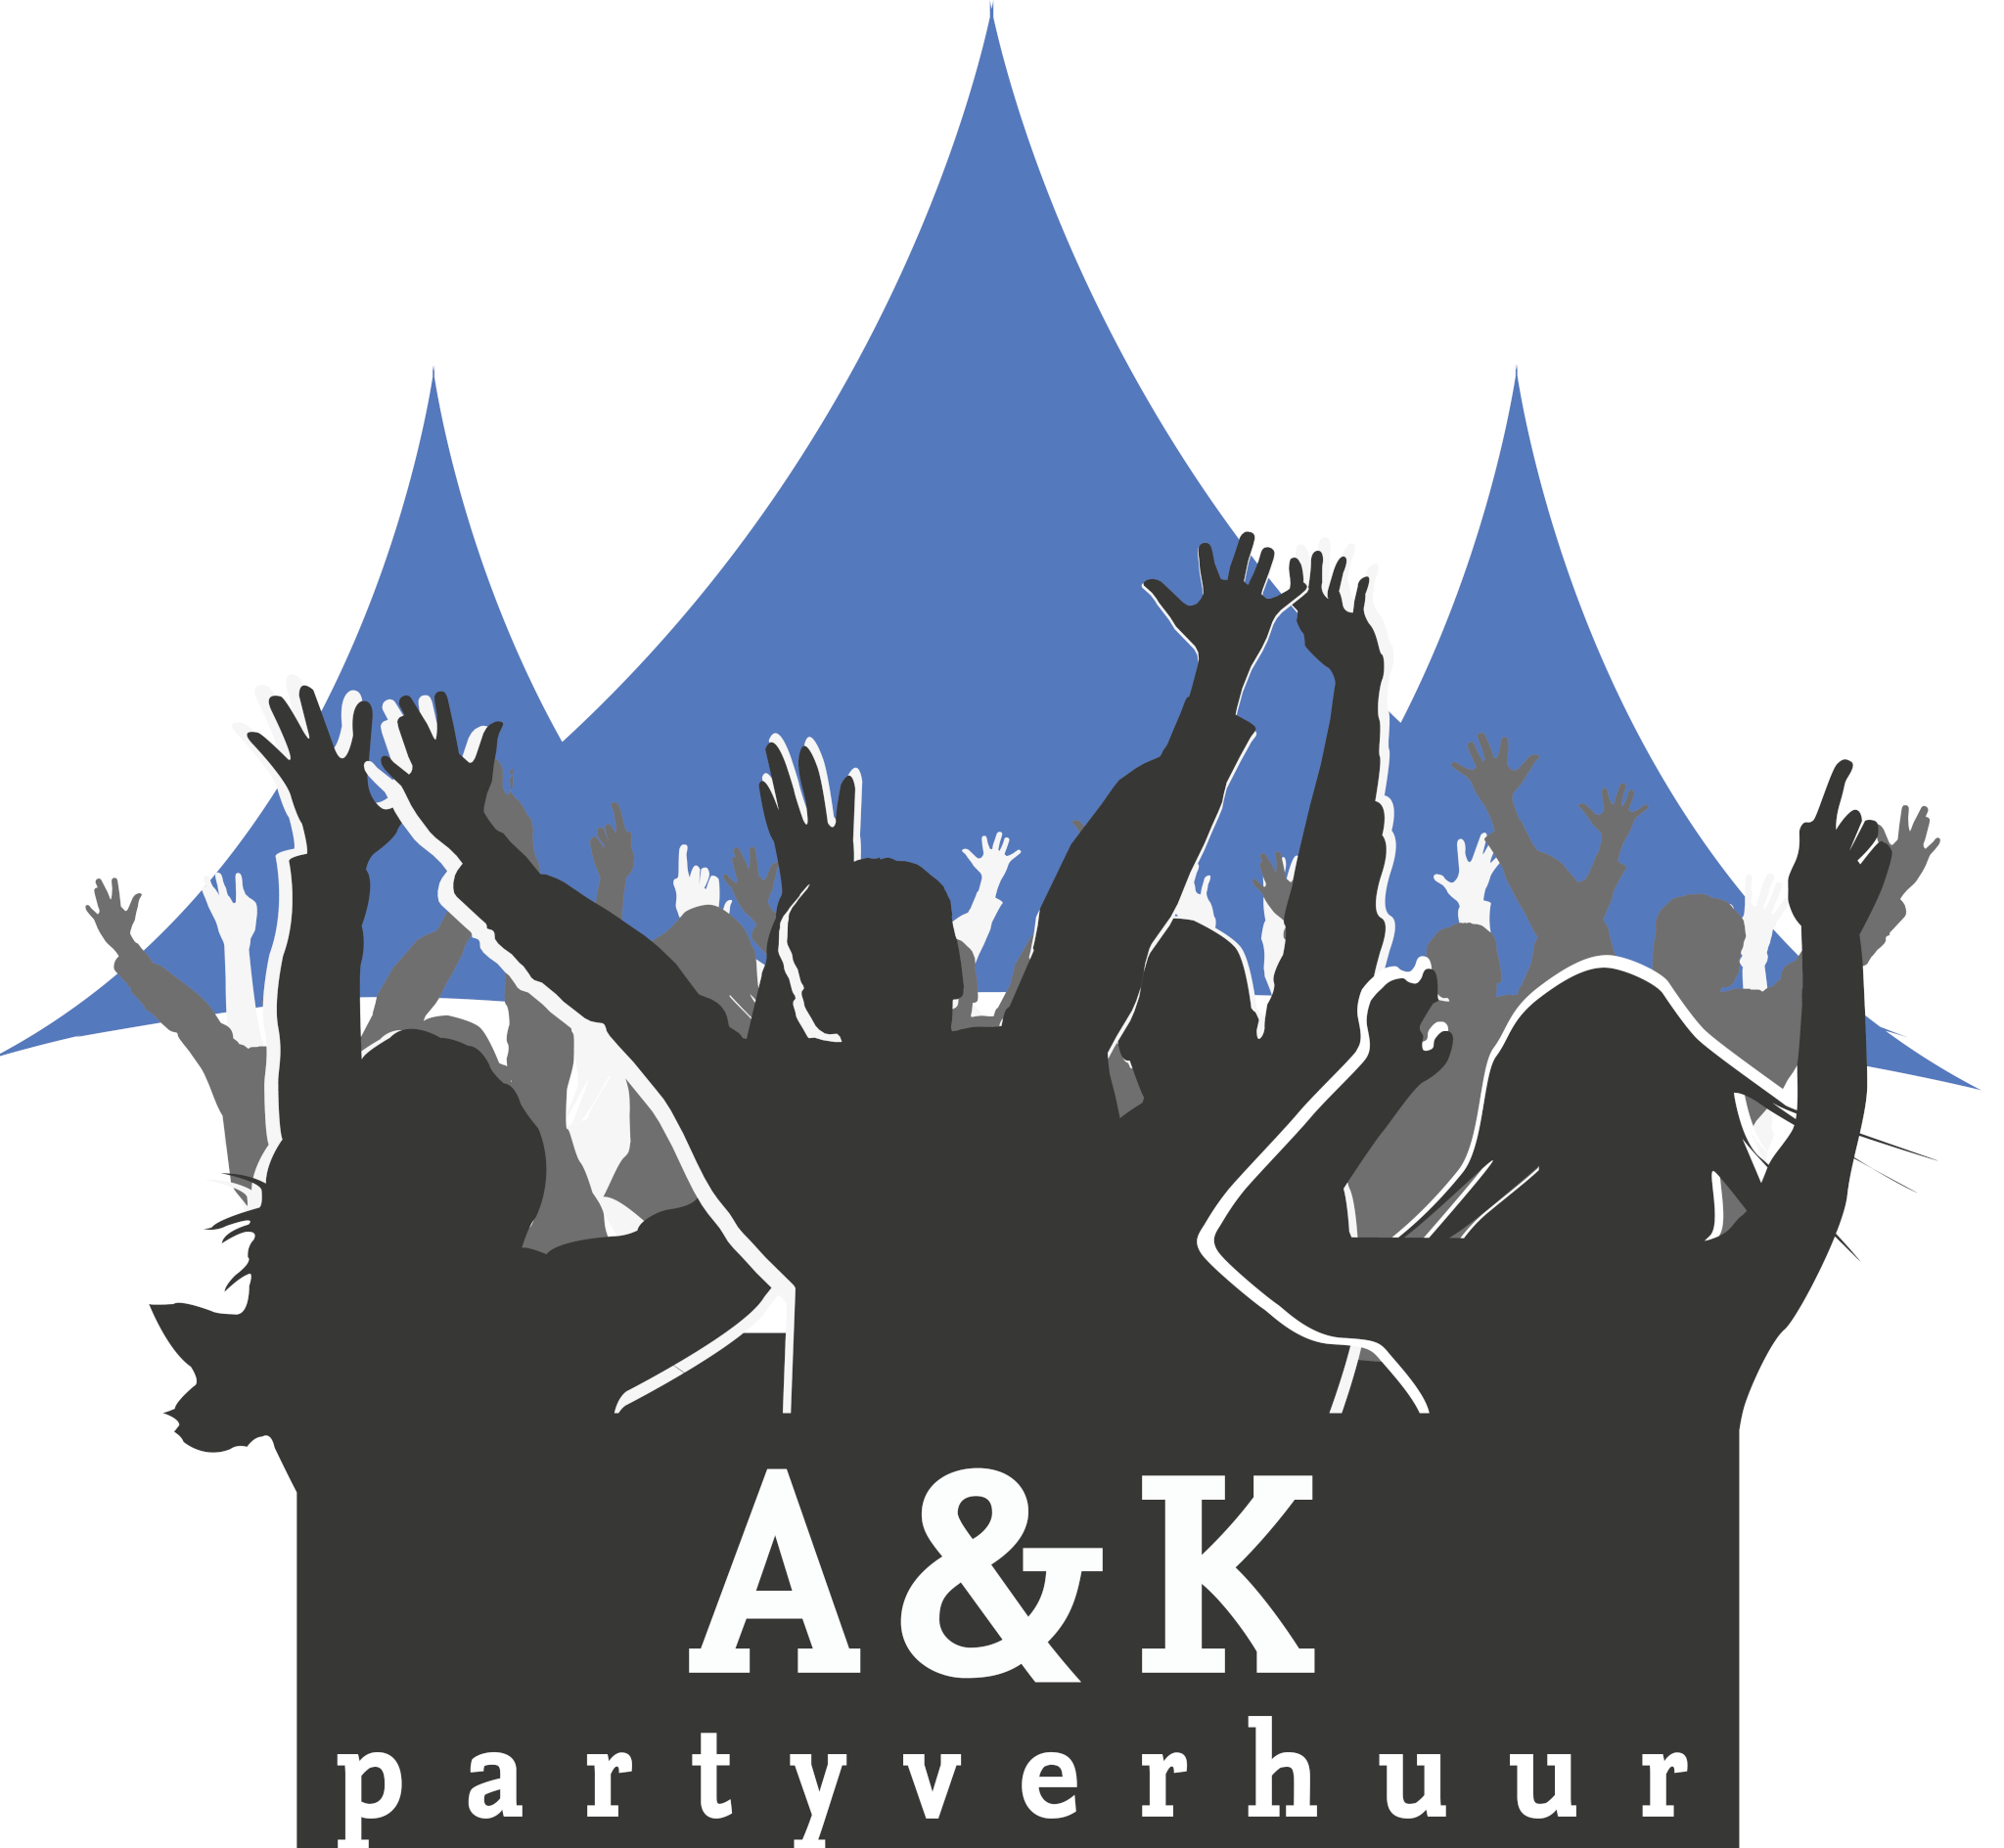 A&K partyverhuur